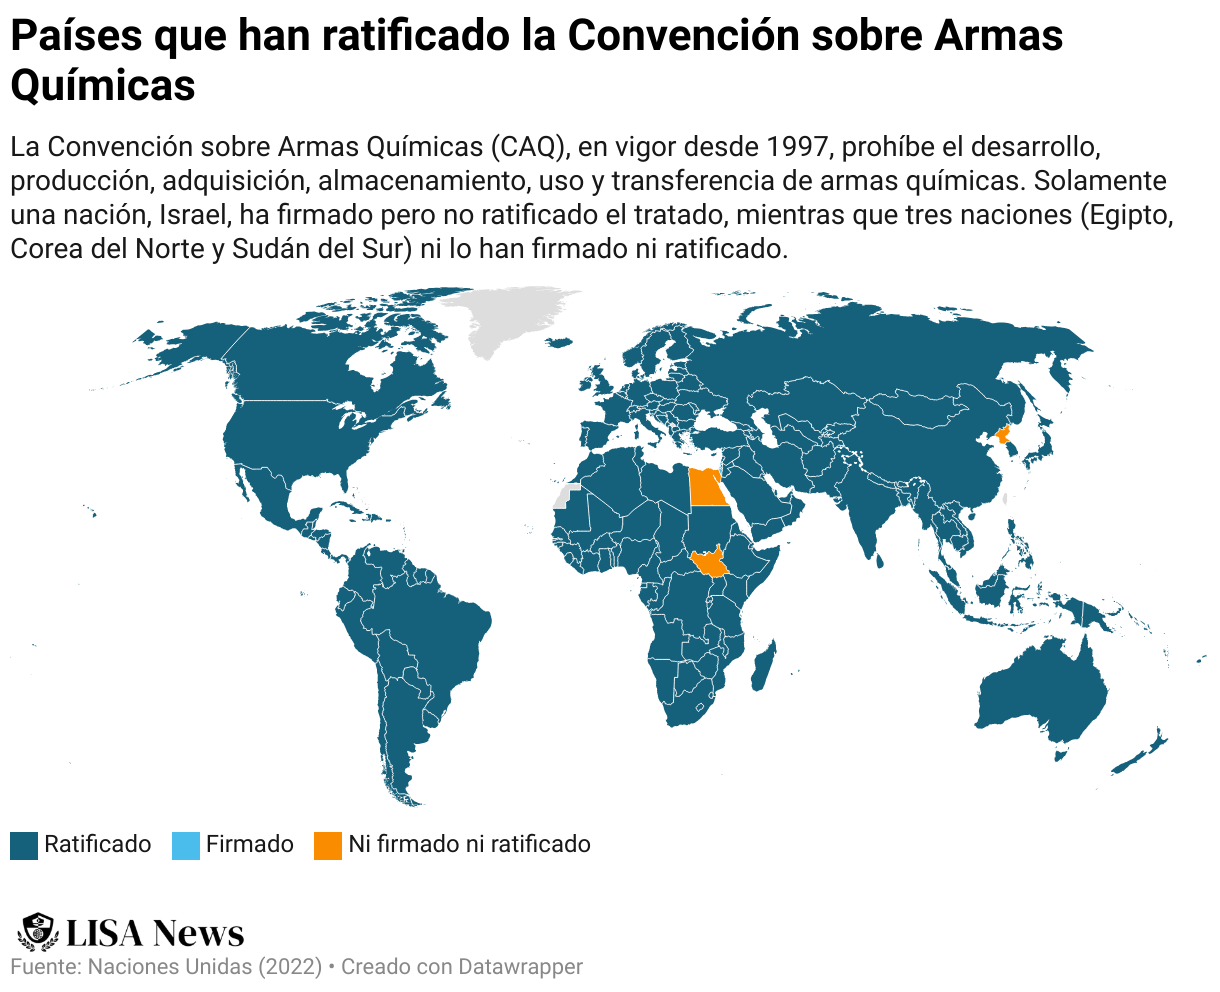 El mapa muestra los países que han ratificado la Convención sobre Armas Químicas, los que la han firmado y los que ni han firmado ni ratificado. Utilizando los datos de Naciones Unidas (2022)